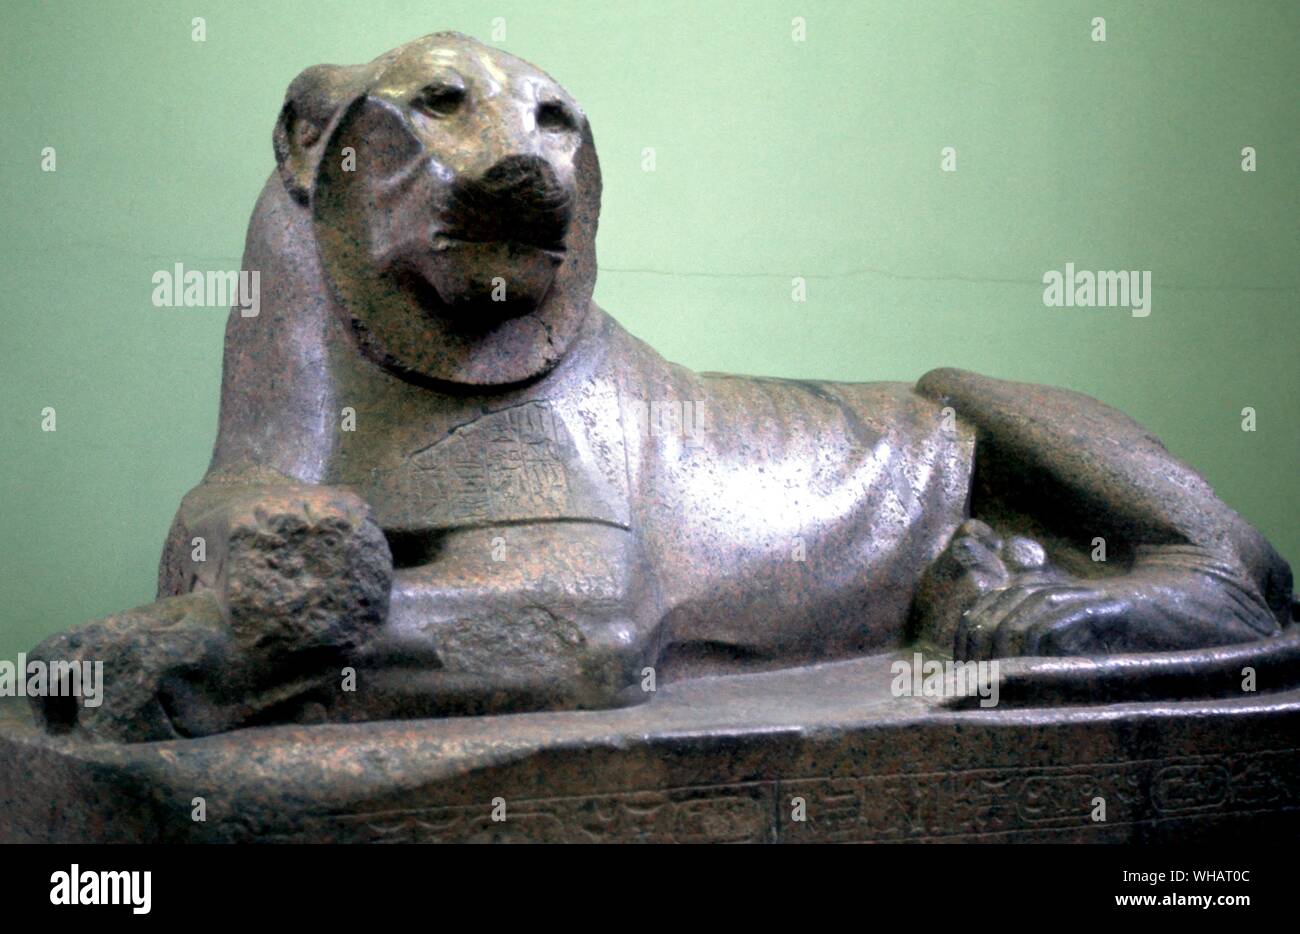 Granito rosso leone di Amenhotep III. . Da Soleb, Sudan. Xviii dinastia, intorno al 1370 A.C. . . Un leone con molti nomi..... . . Questo leone è uno di una coppia raccolti dal sito Meroitic di Gebel Barkal dal Signore Prudhoe, che è il motivo per cui essi sono a volte chiamati "Prudhoe leoni". Originariamente dal tempio di Soleb in Nubia, i Lions hanno agito come custode figure prima di un tempio costruito da Amenofi III (1390-1352 a.C.), un elaborato un monumento al culto del re come un "deificato signore della Nubia", realizzato dal leone.. Foto Stock